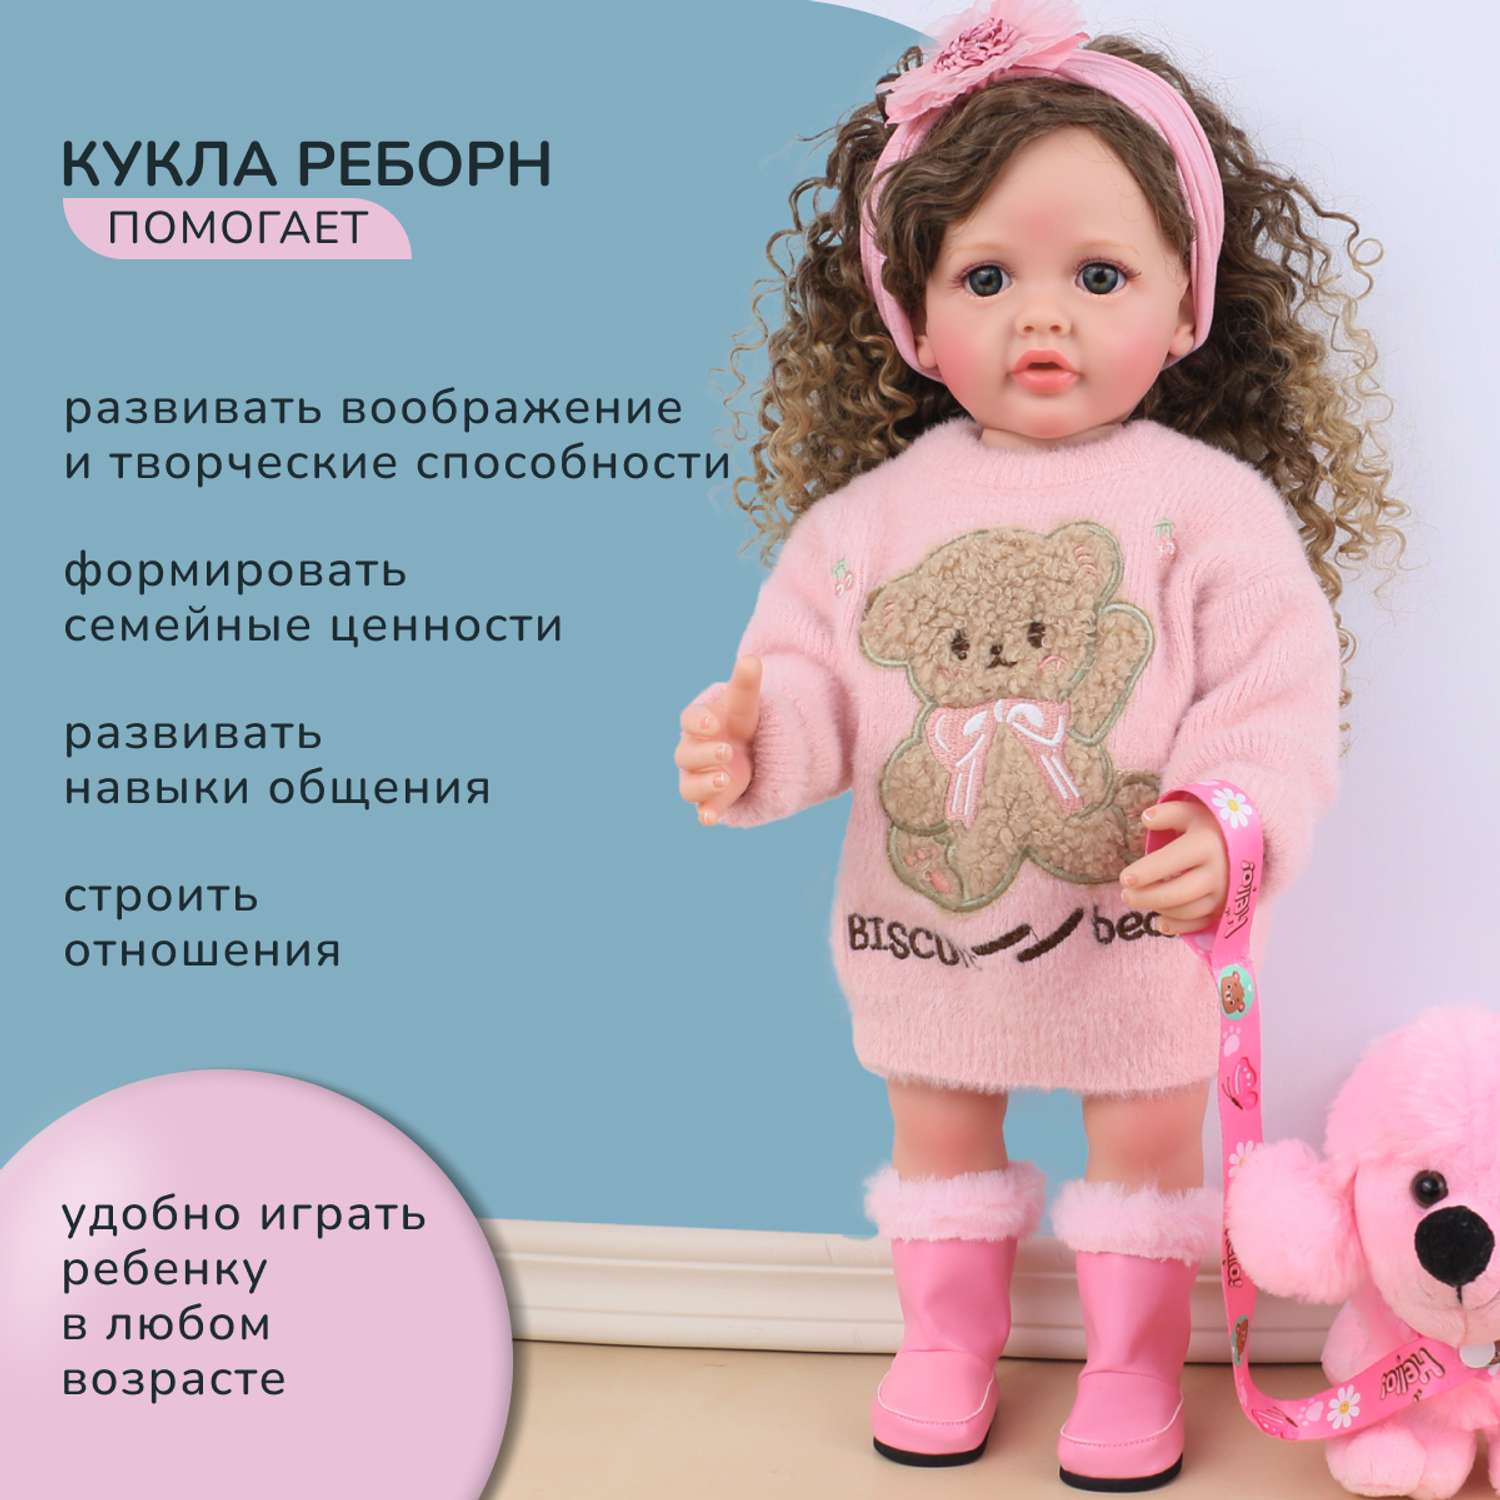 Кукла Реборн QA BABY Татьяна большая пупс набор игрушки для девочки 55 см 5554 - фото 8